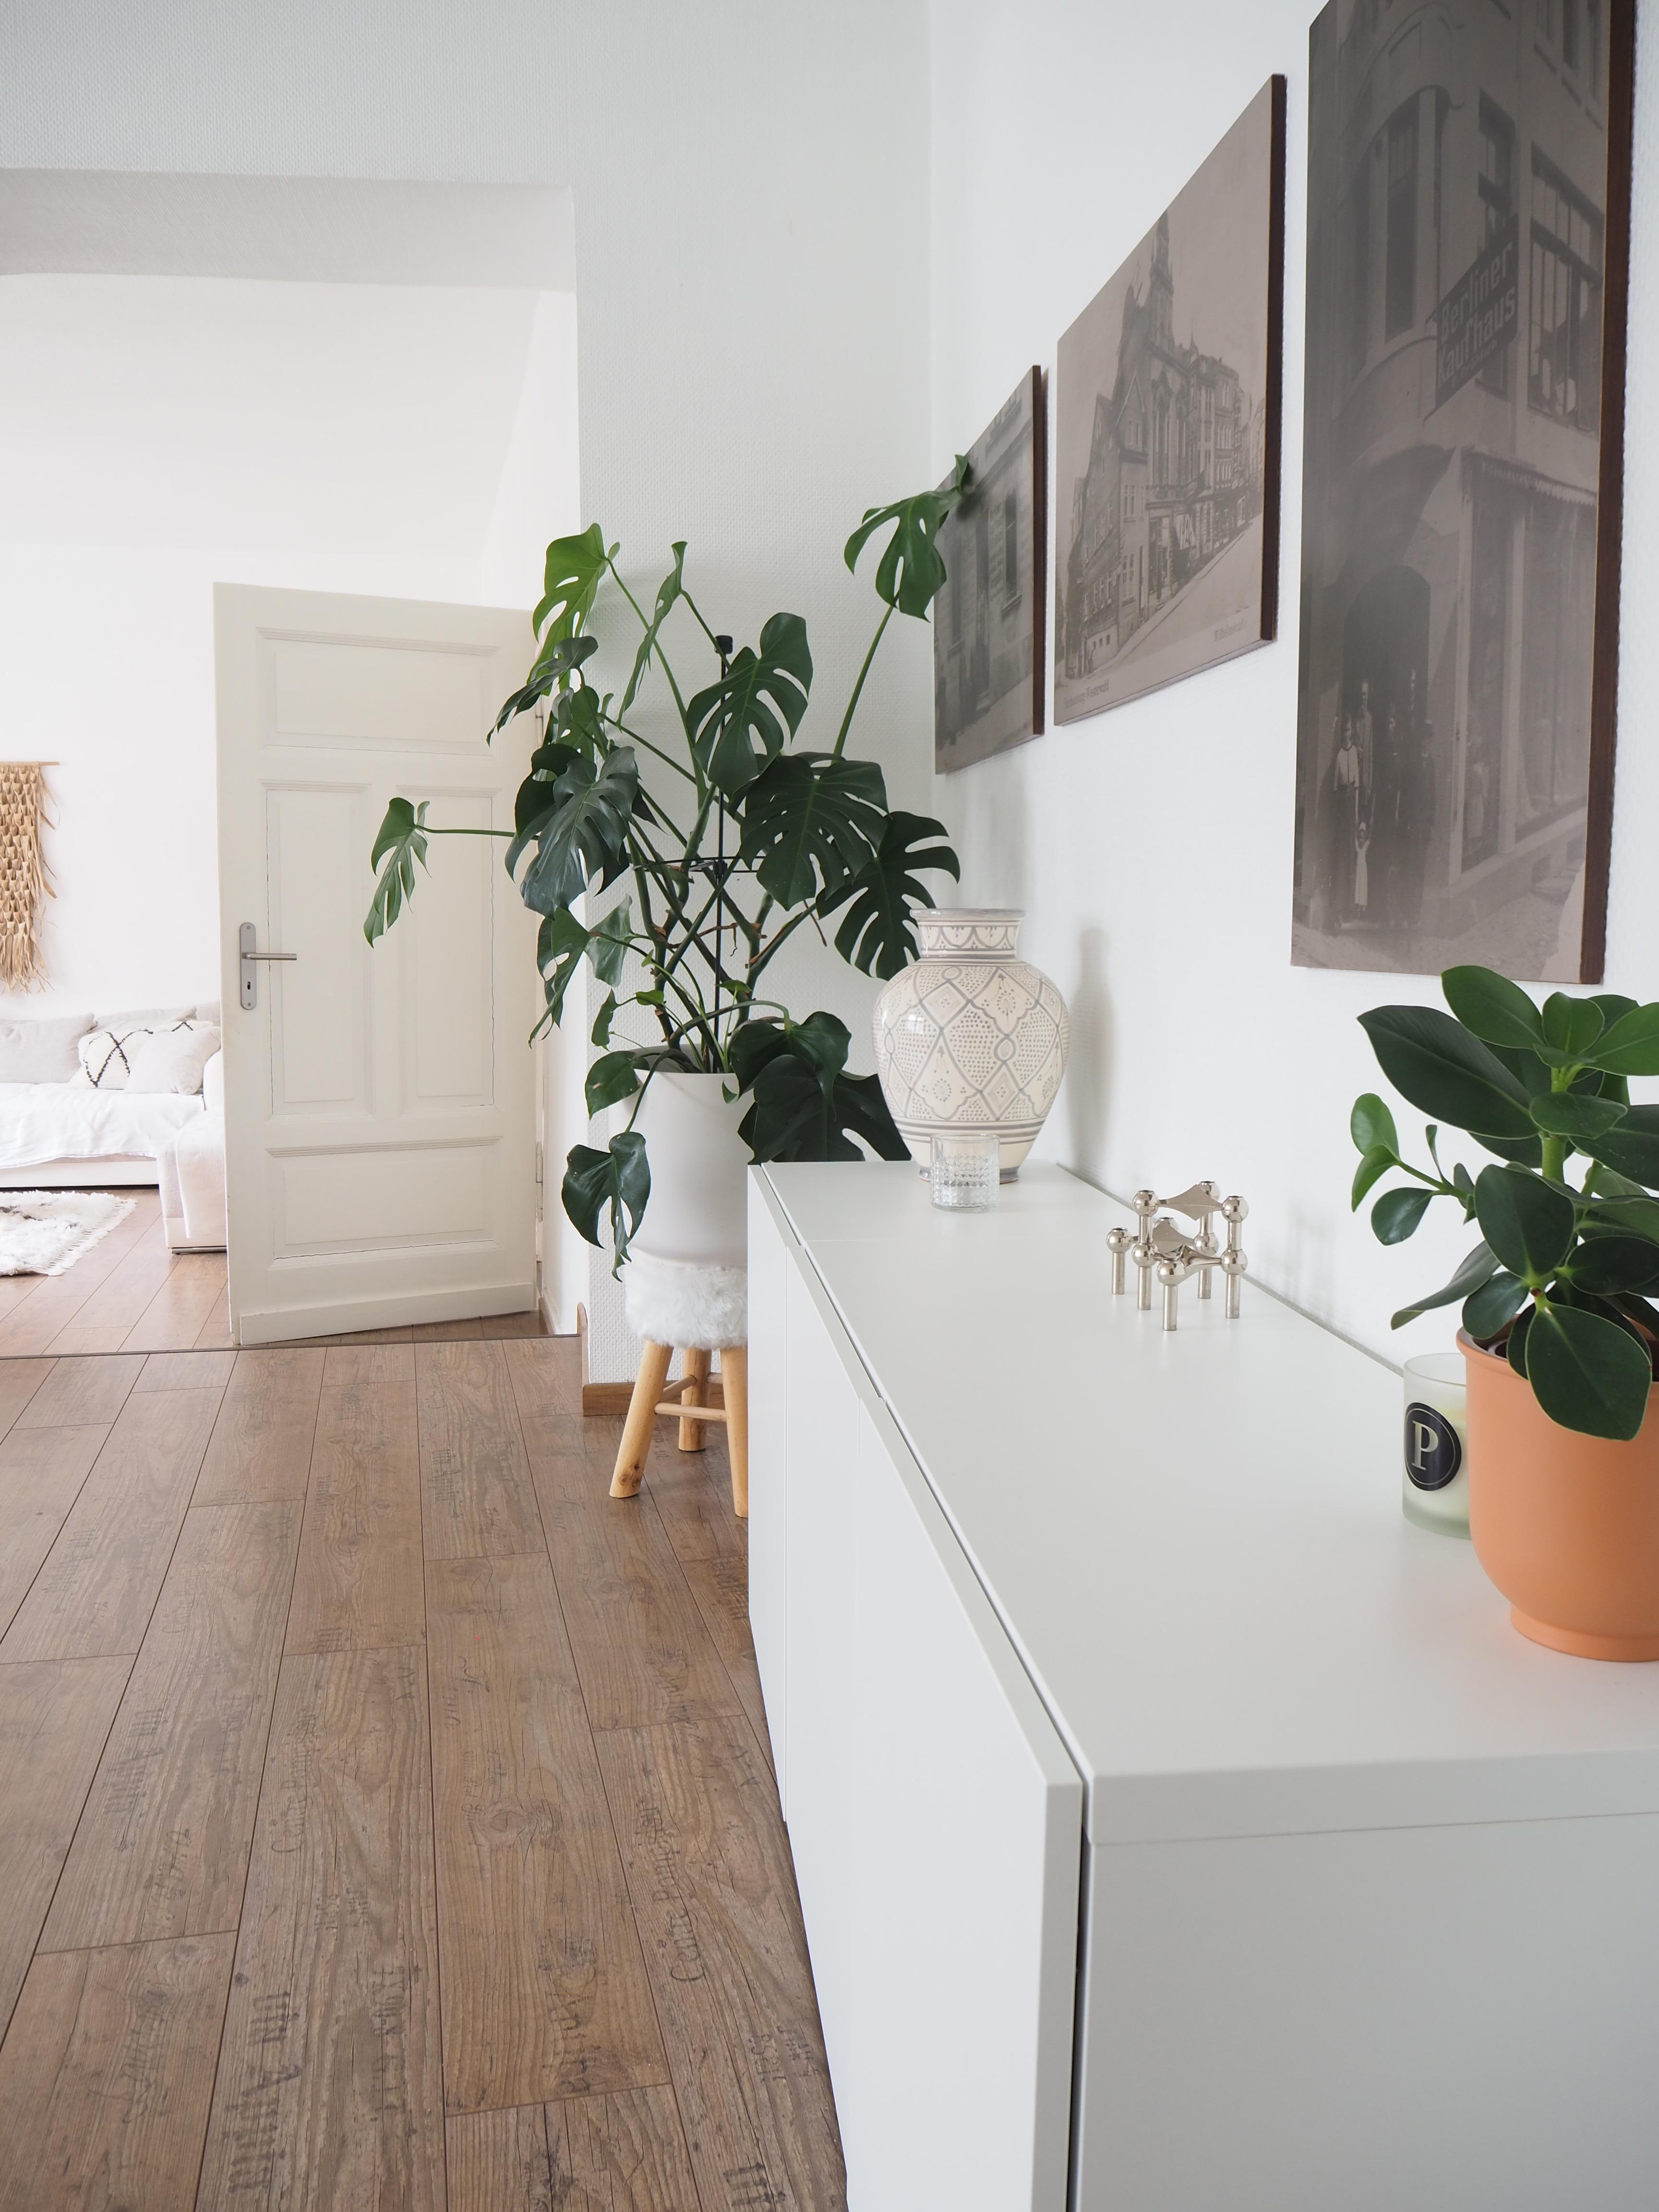 Weiß, Holz, Pflanzen - Meine zeitlose Wohlfühlkombi 🌝 #wohnzimmer #altbau #weiß #besta #pflanzenliebe